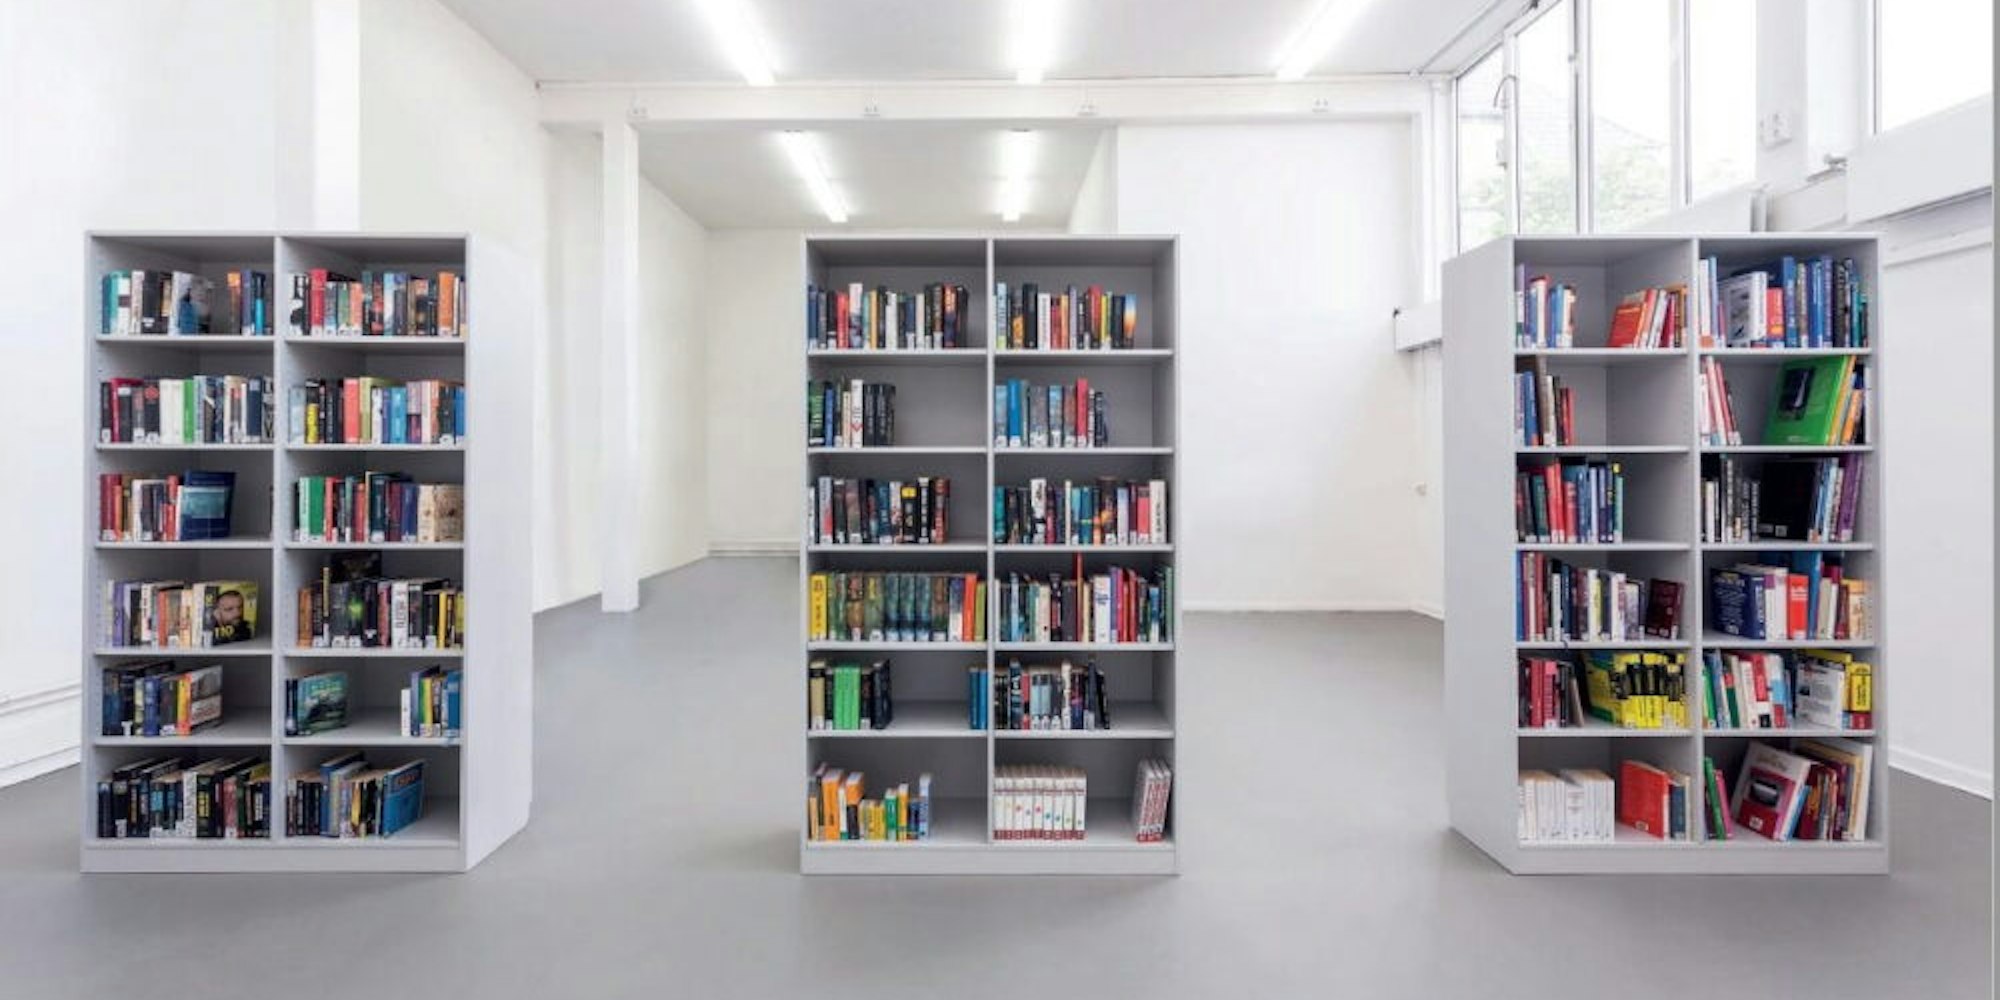 In dieser Rauminstallation rekonstruiert Belia Brückner den aktuellen Buchbestand der Jugendstrafanstalt Hahnöfersand.